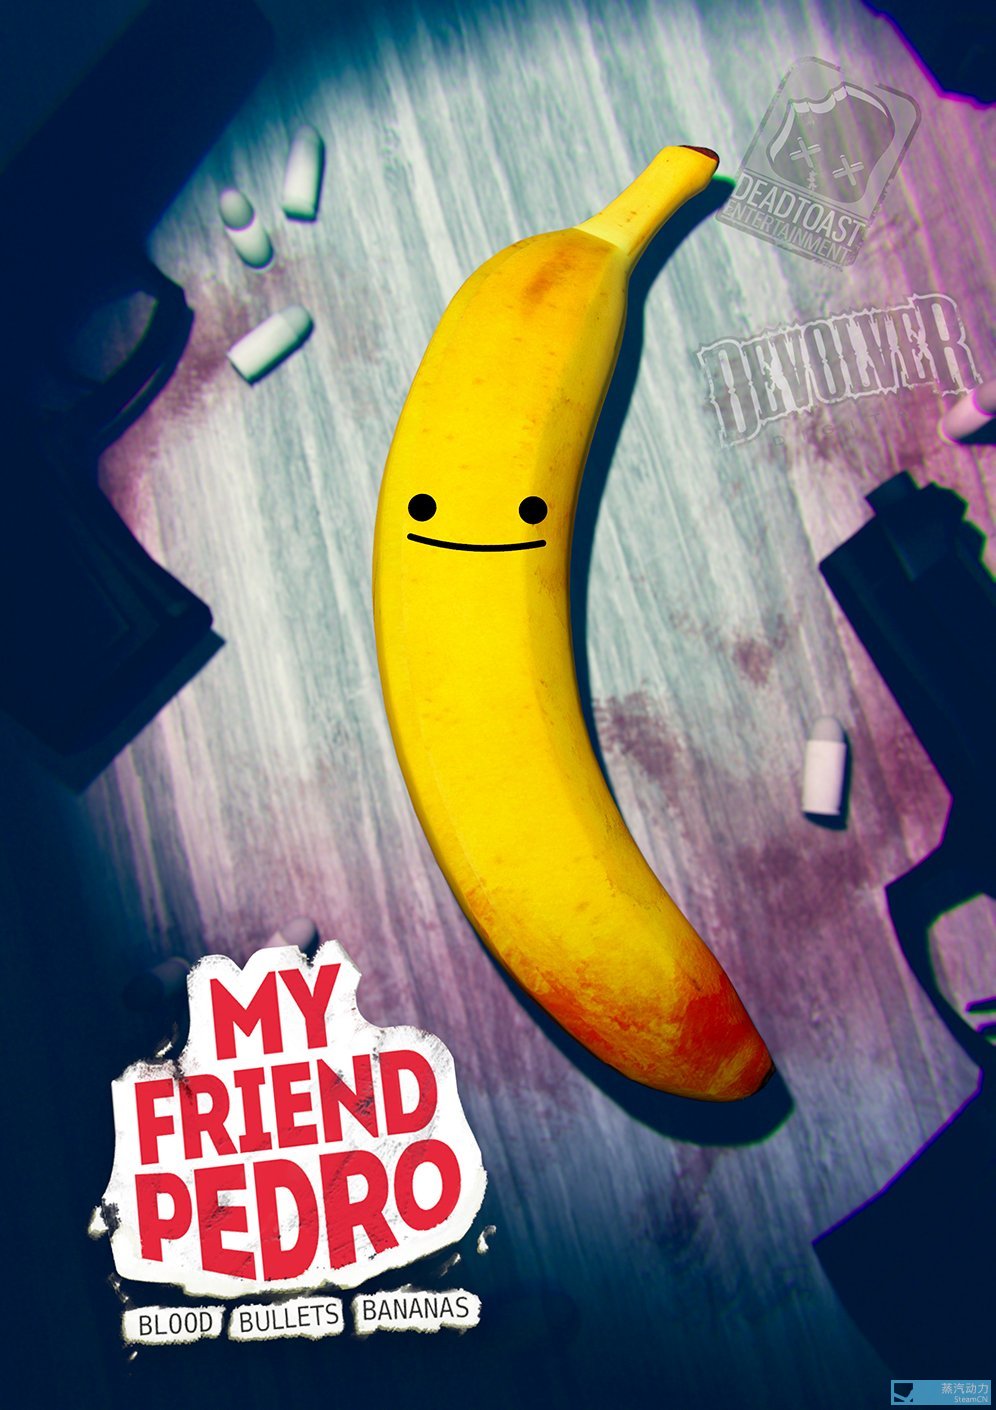 香蕉君图片手机壁纸图片